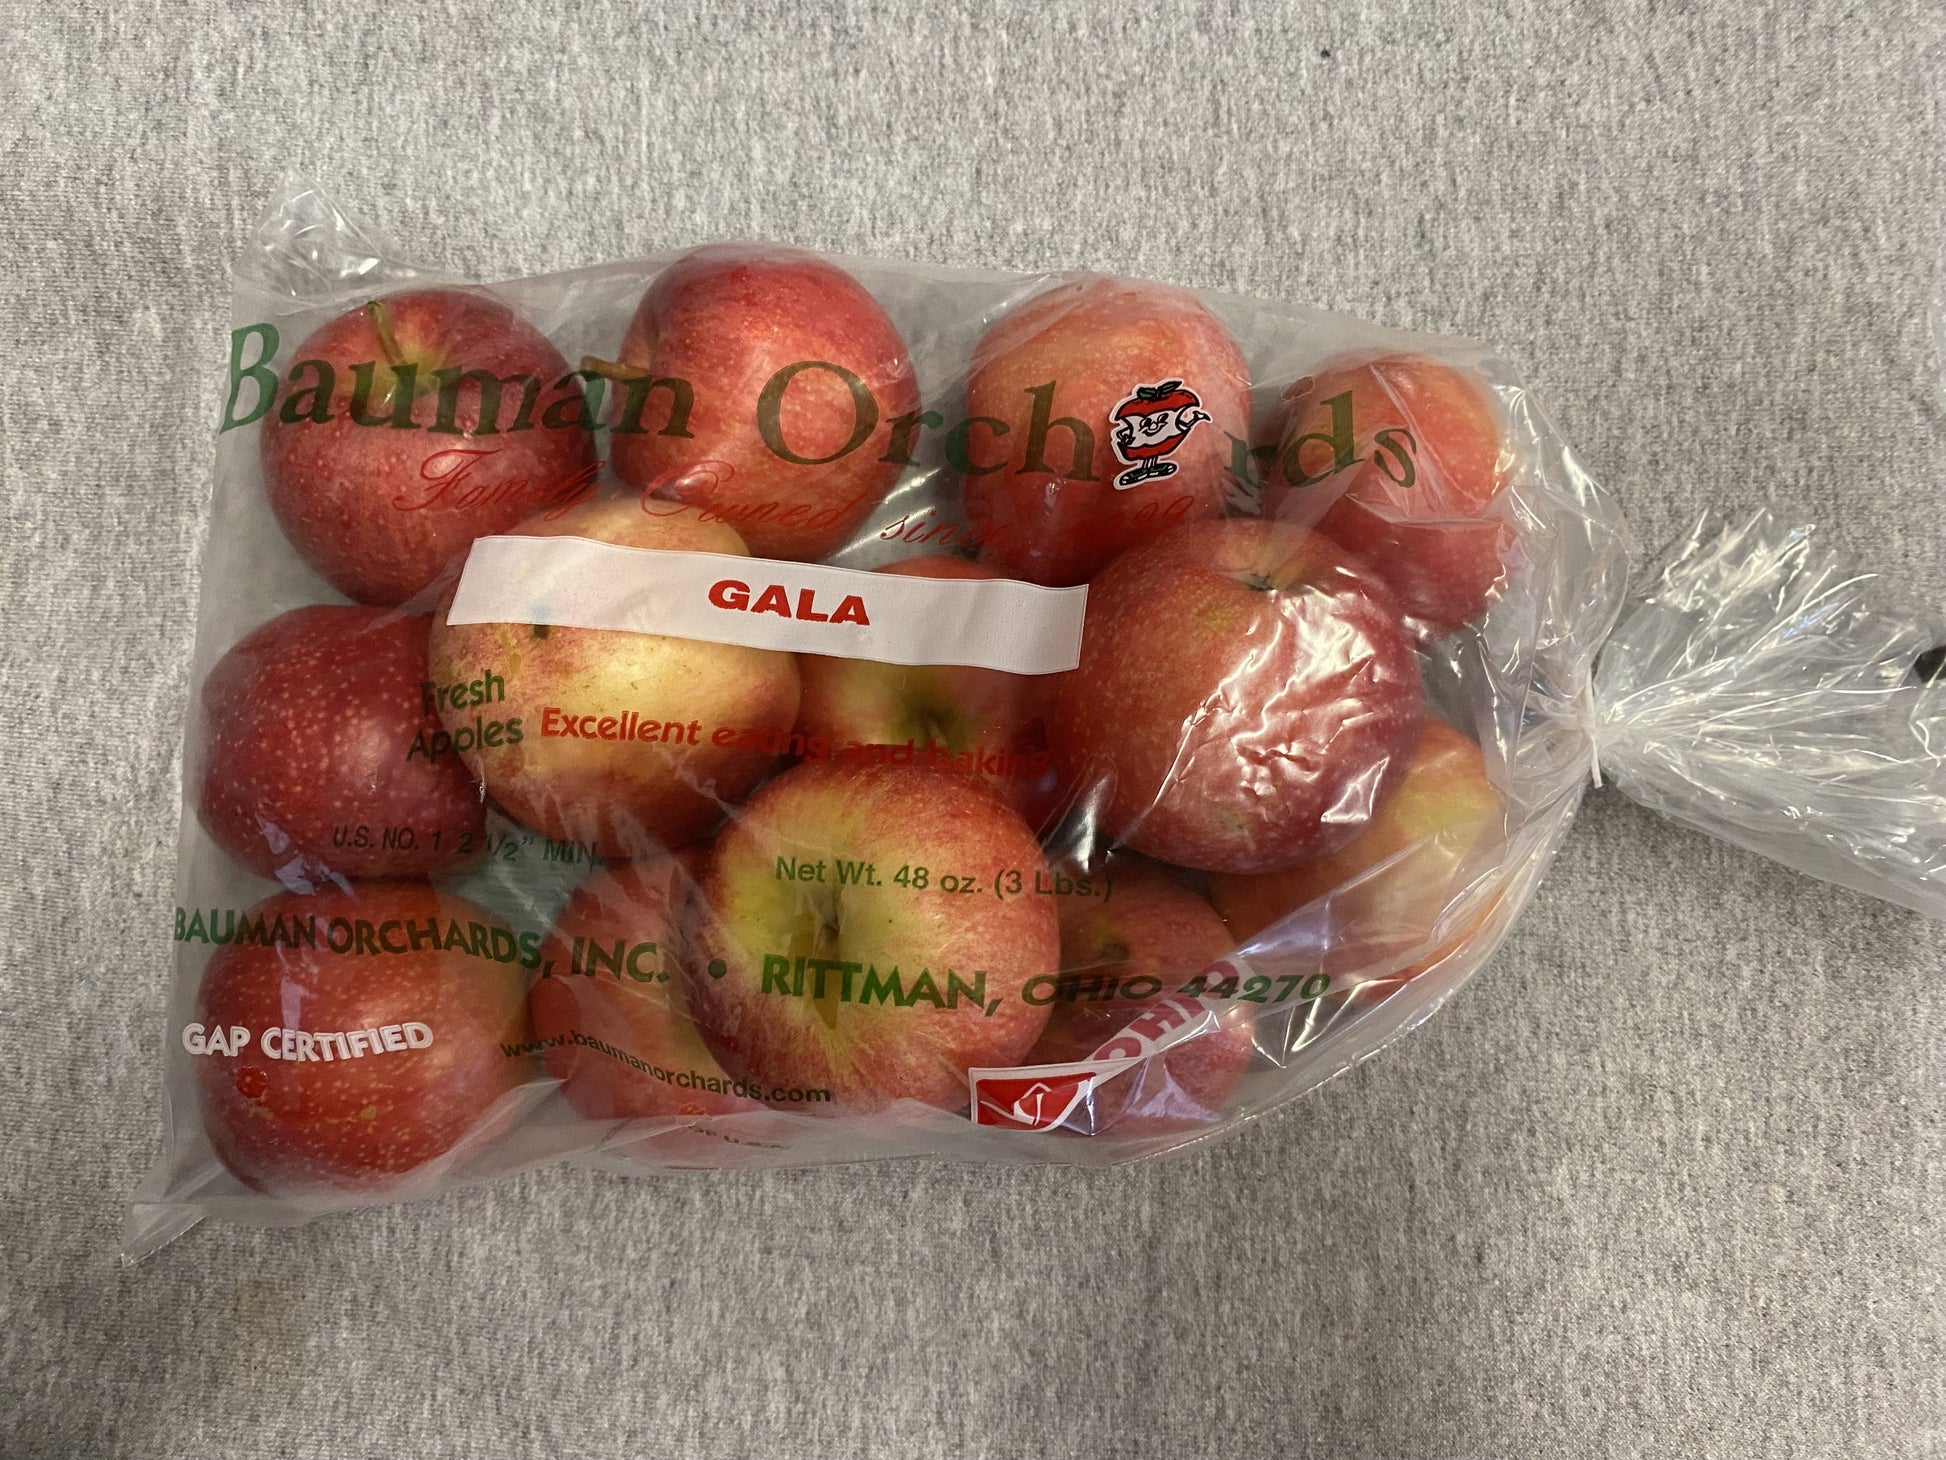 Apples Gala - 3 lb bag